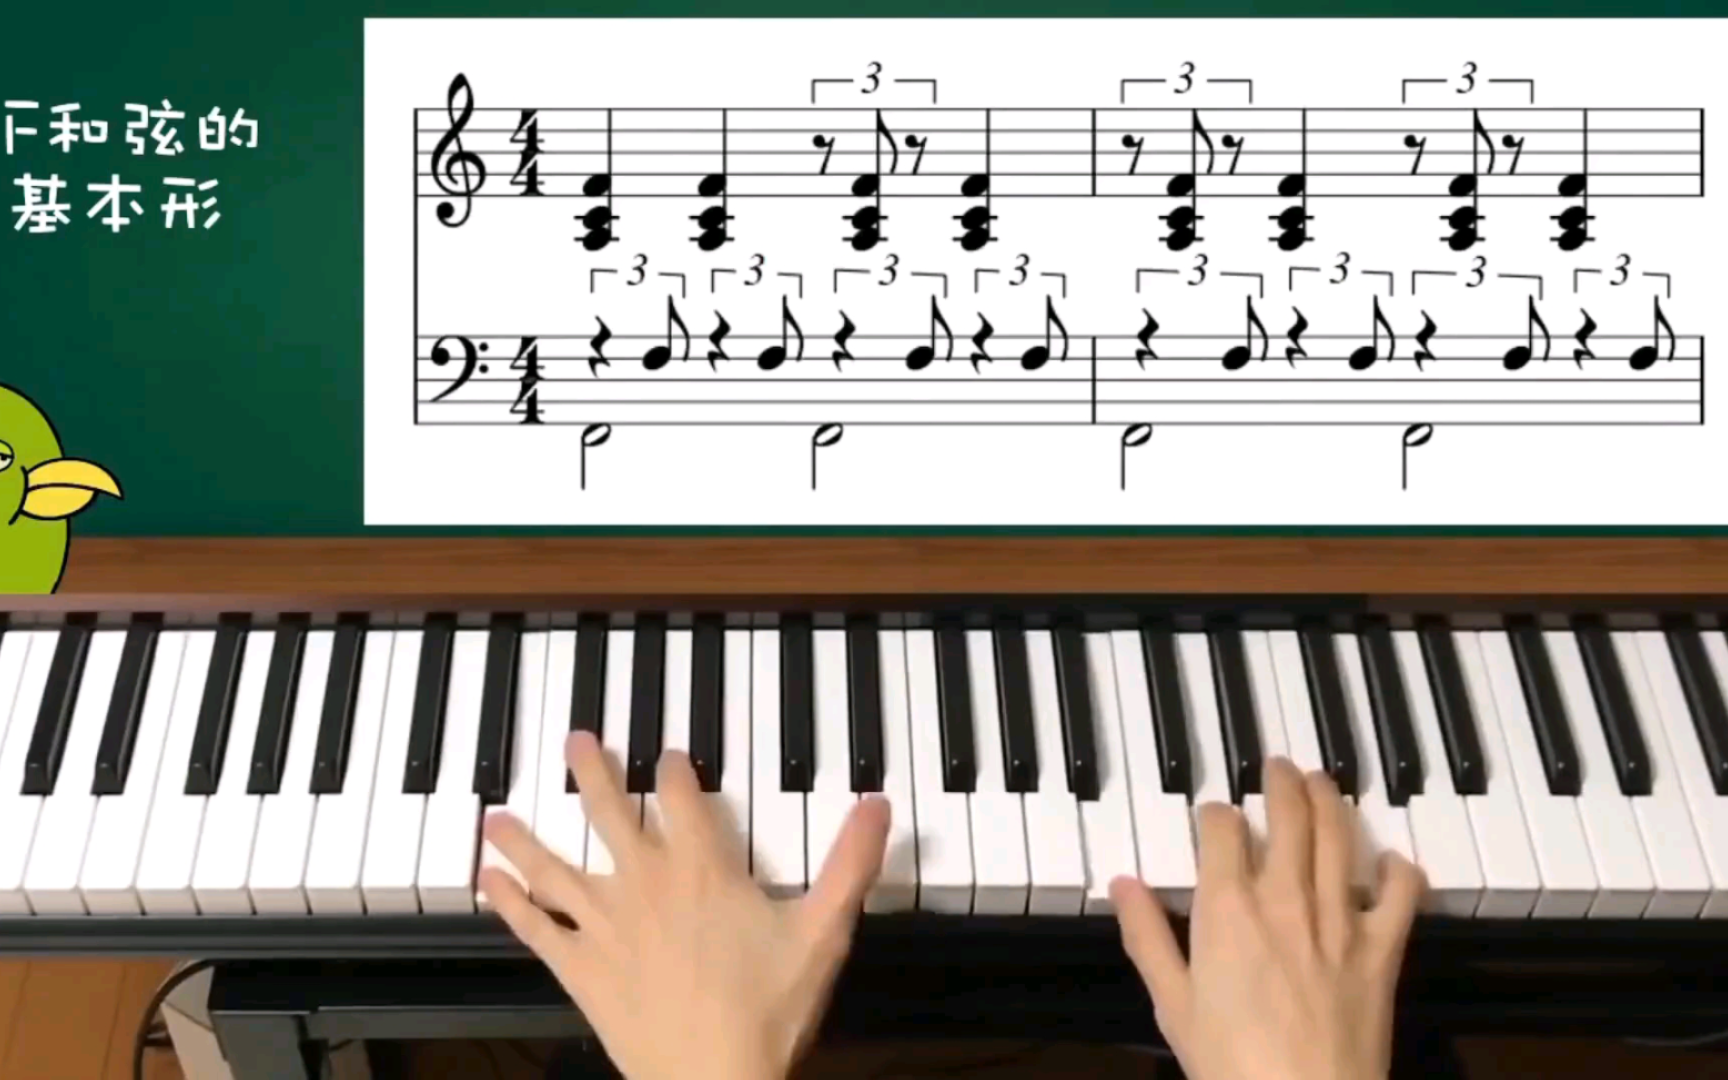 【干货】50种钢琴即兴伴奏织体&加花技巧教学